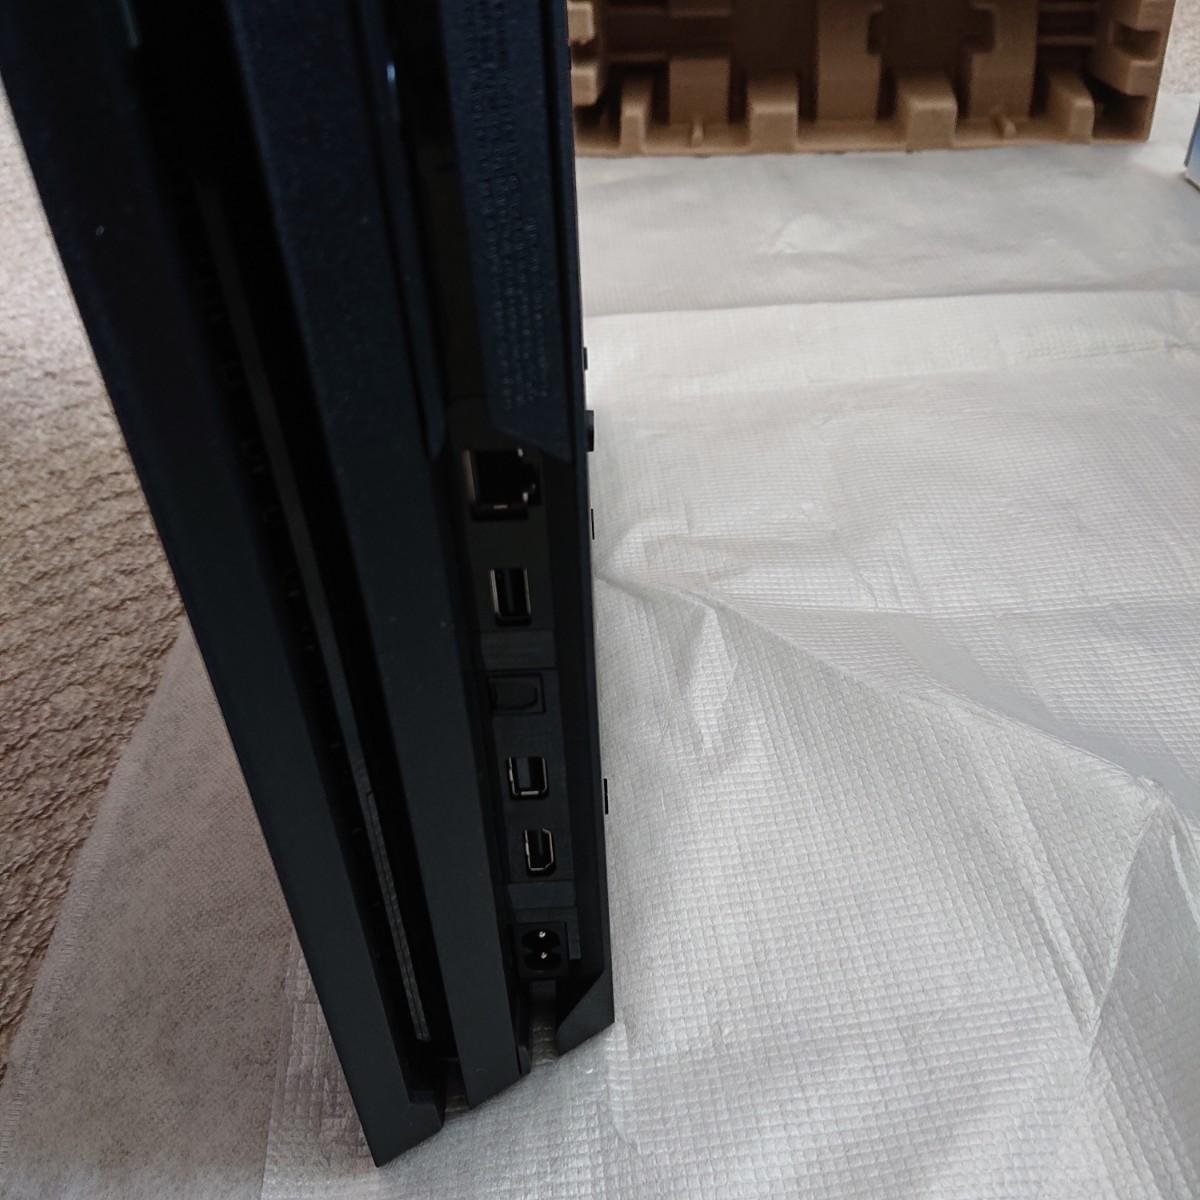 まとめ買い割引 SONY PlayStation4 PS4本体 CUH-7200BB01 Pro その他